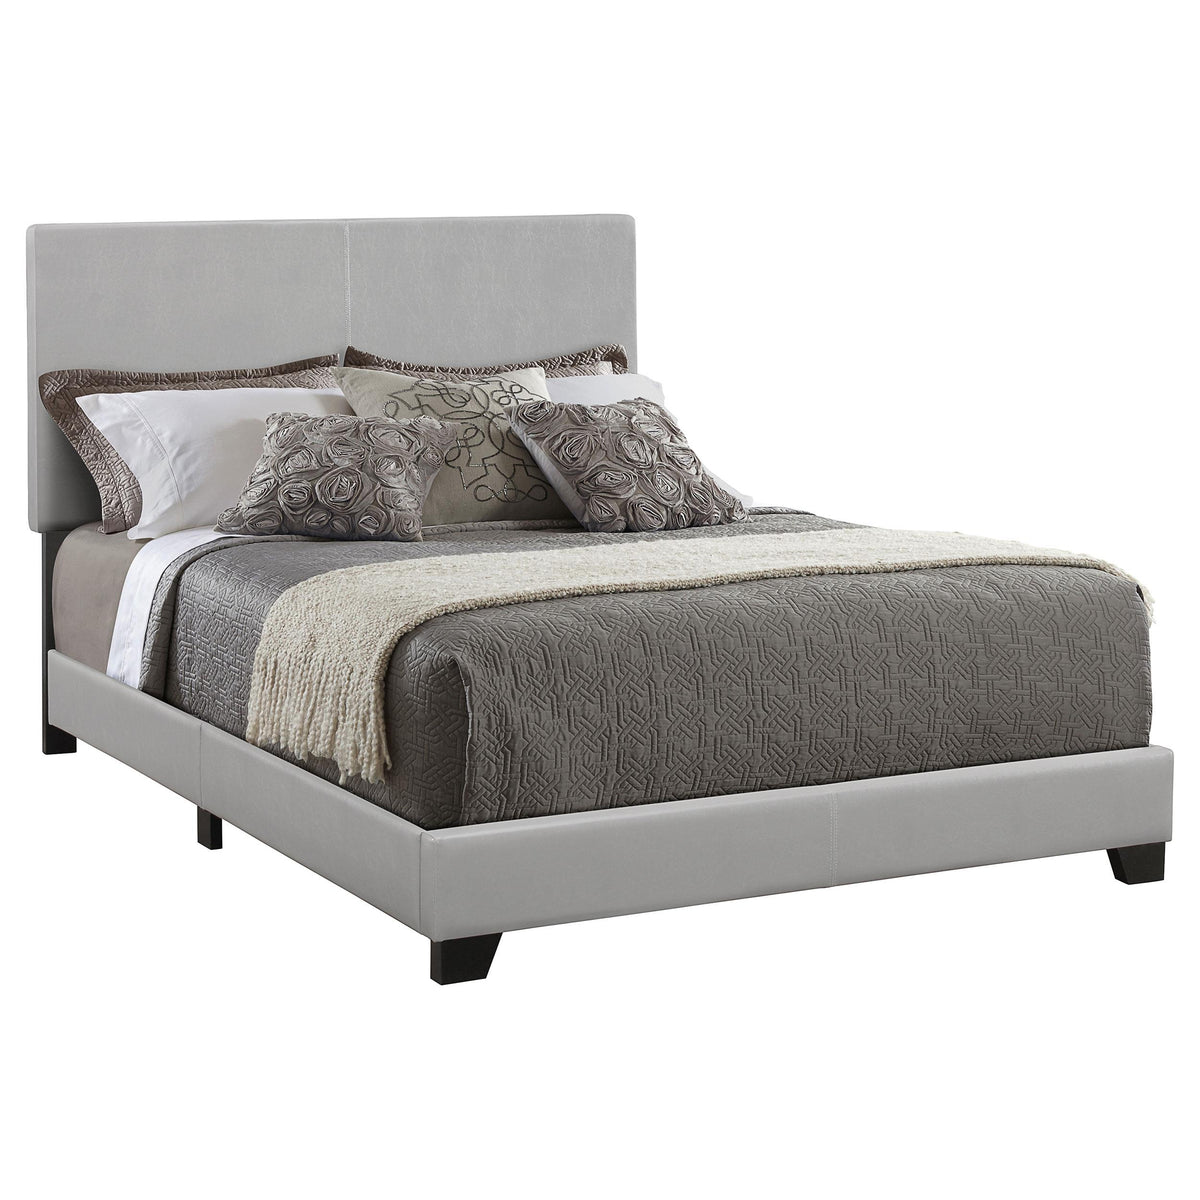 Dorian Upholstered Queen Bed Grey  Half Price Furniture